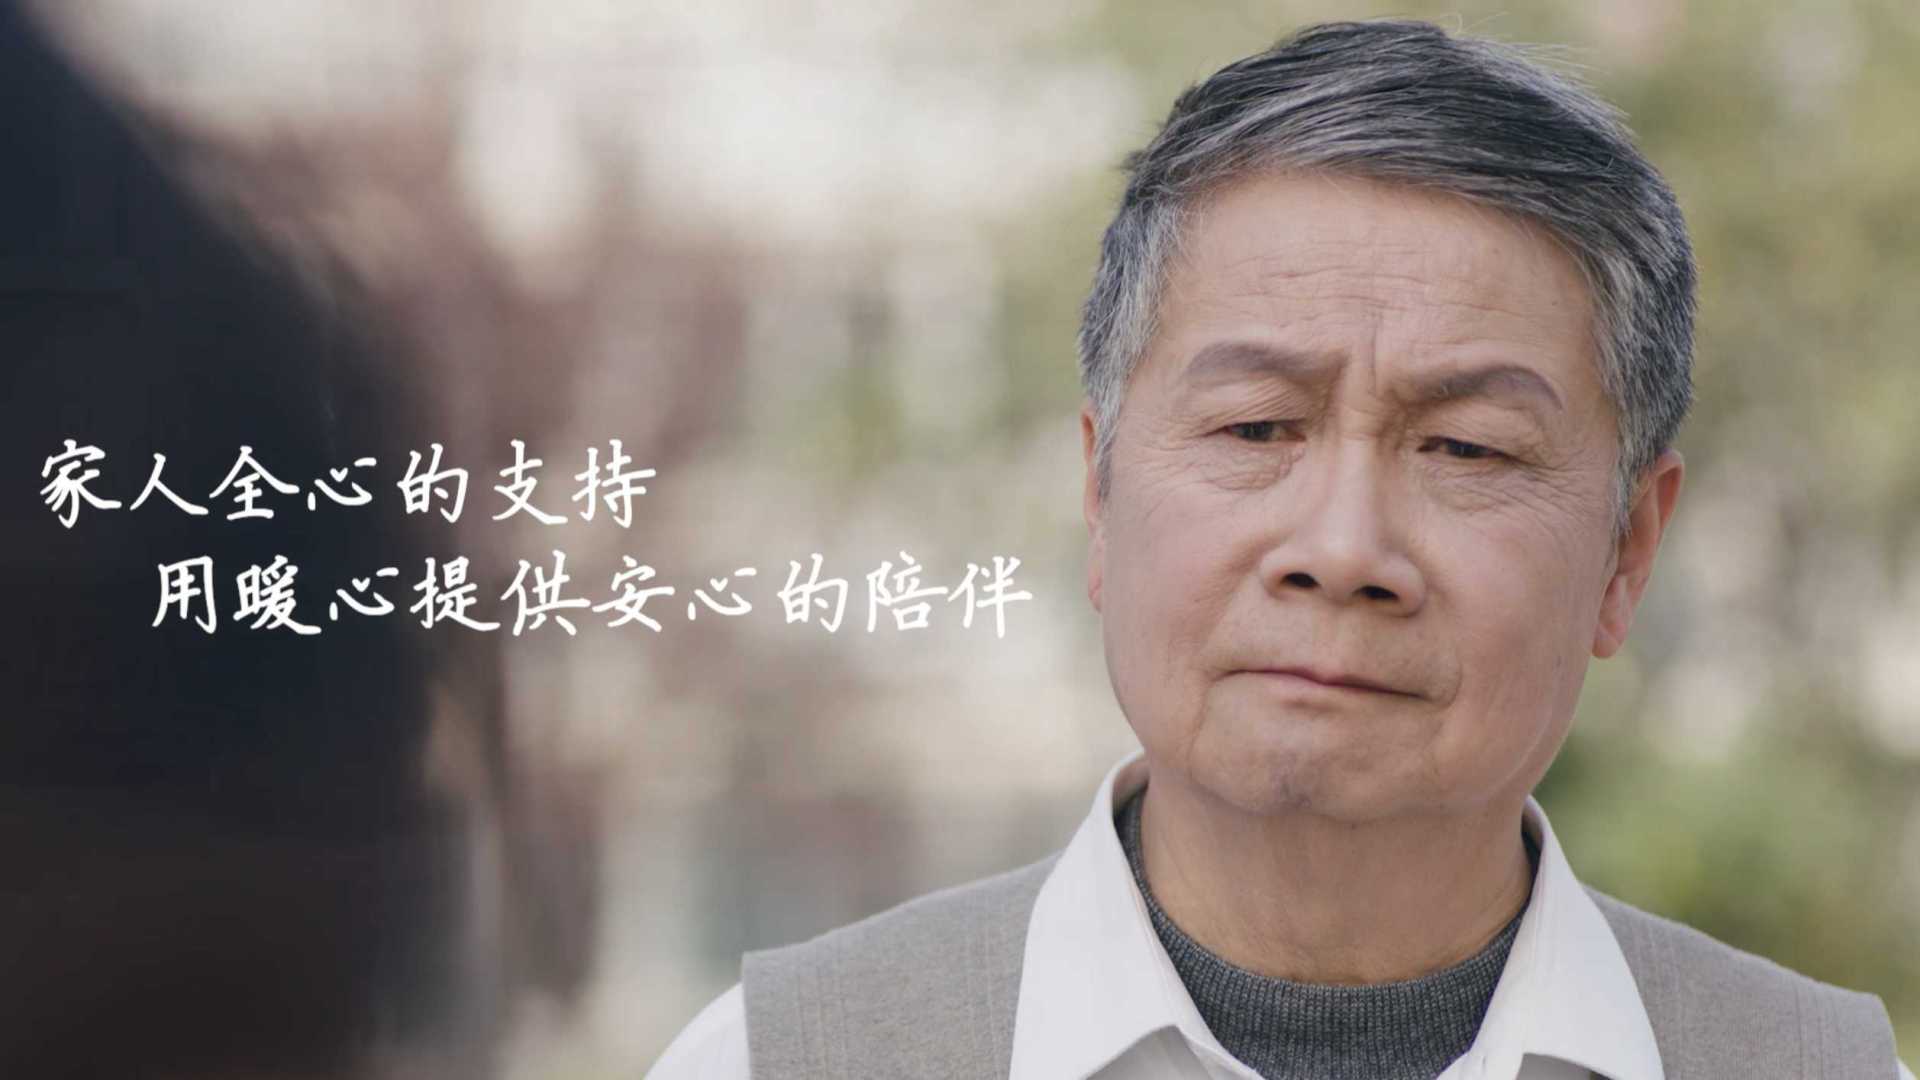 南京银行《存款保险》宣传片